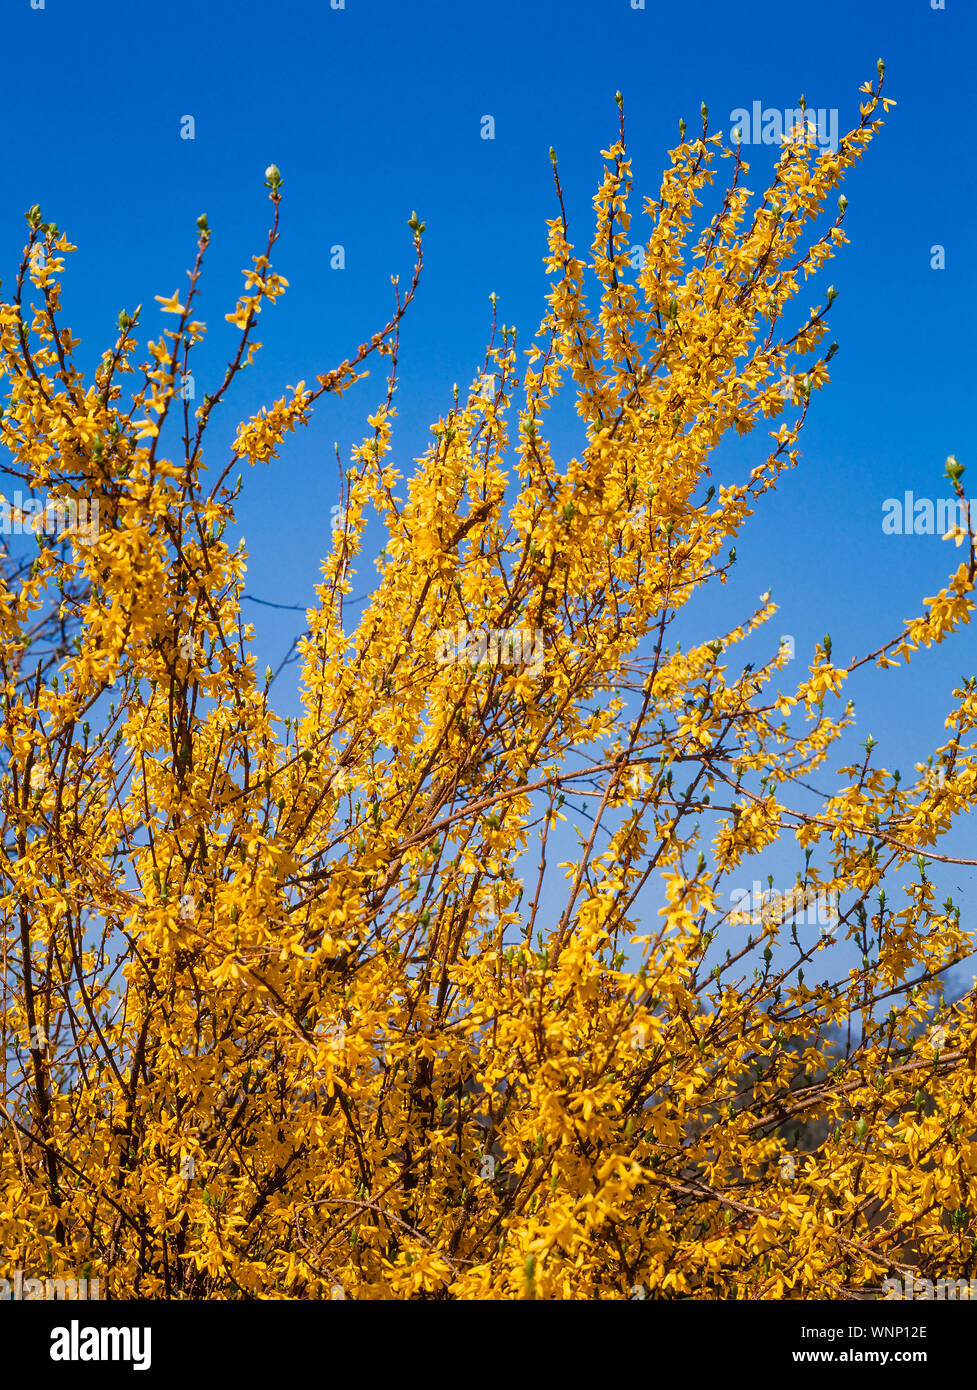 Frühling Blüten, Pyracantha sp. helle gelbe Blumen, Sonne, blauer Himmel Stockfoto